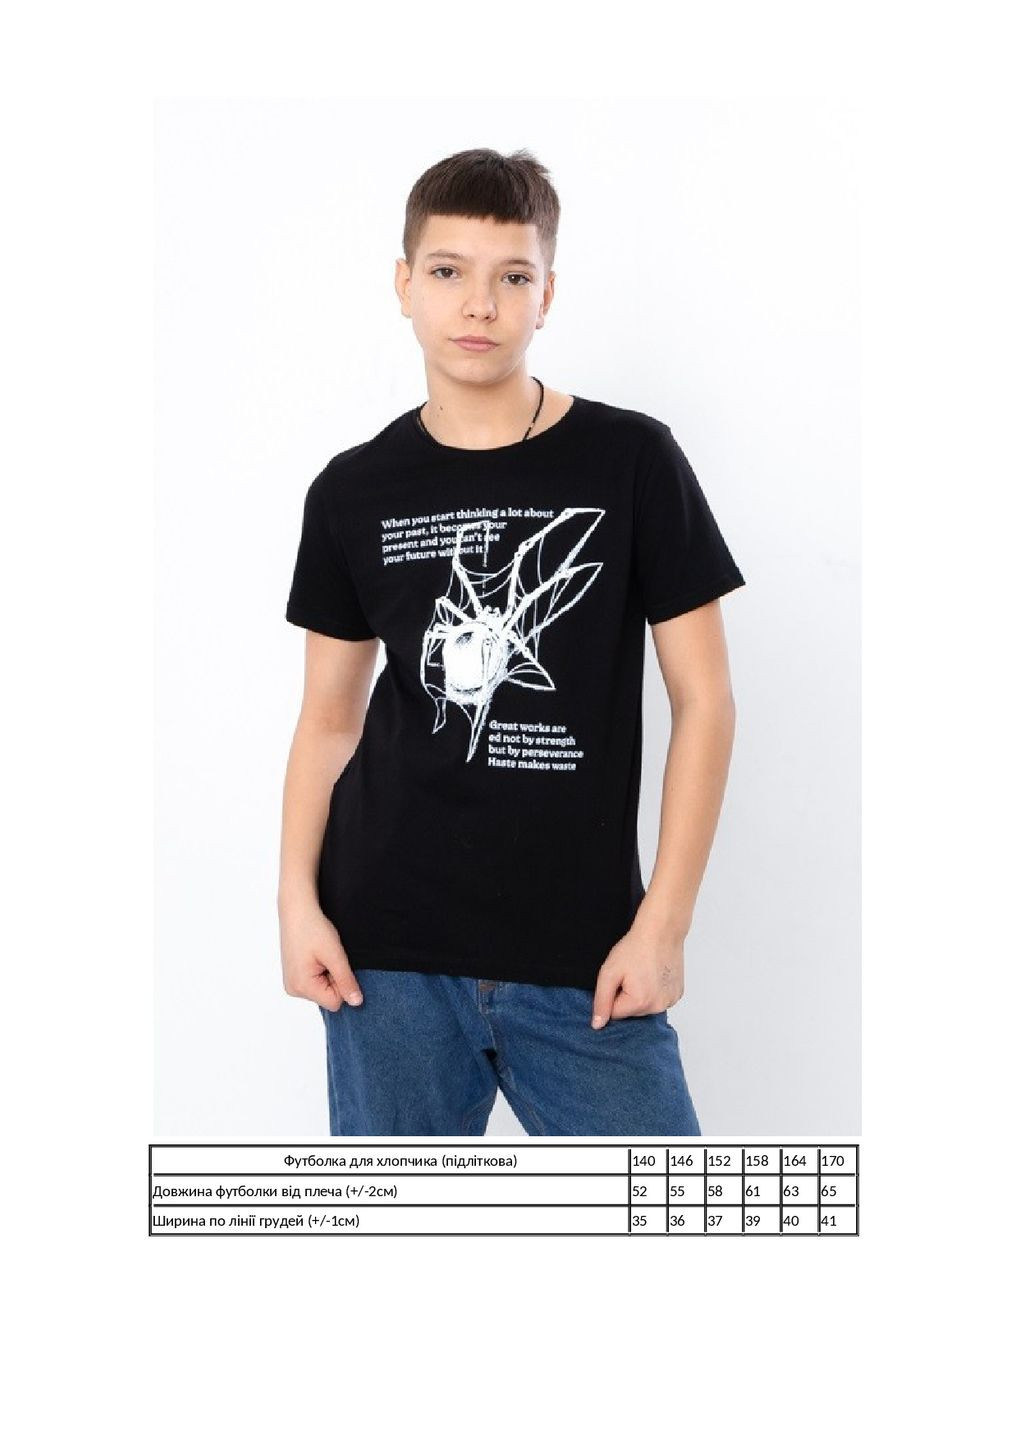 Черная летняя футболка для мальчика (подростковая) KINDER MODE